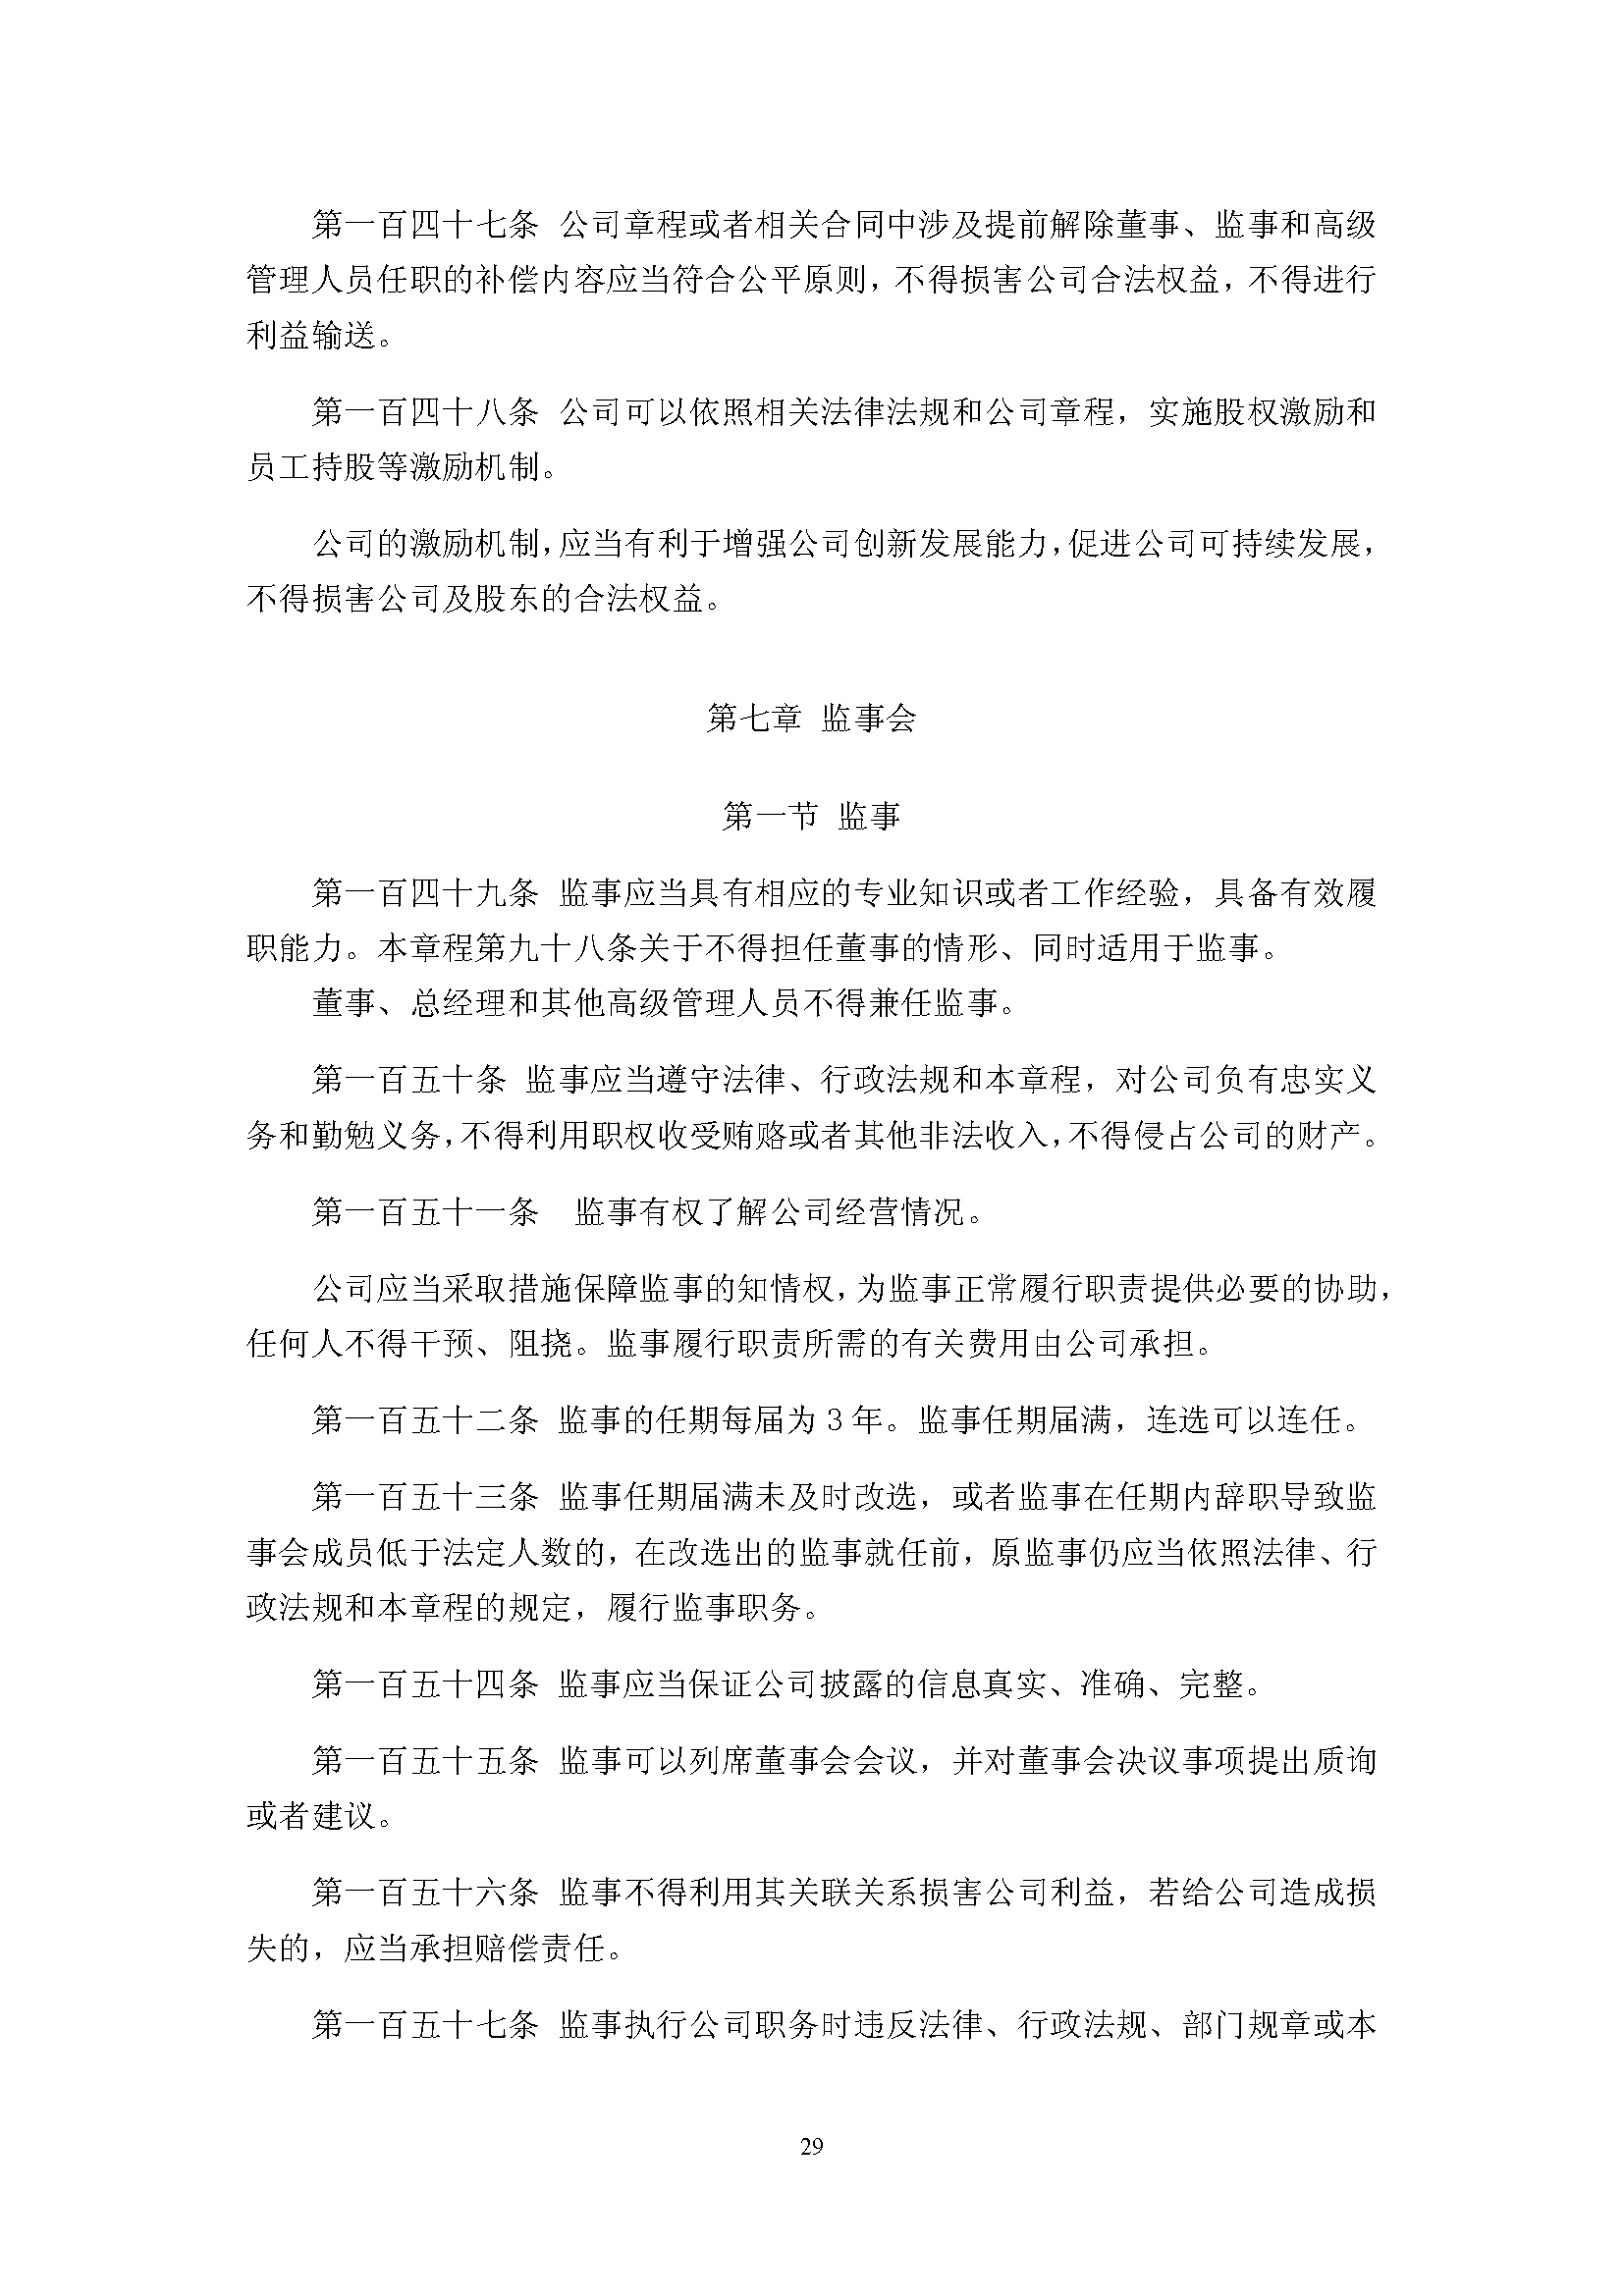 宜华生活公司章程(2019-5-31)_页面_29.png